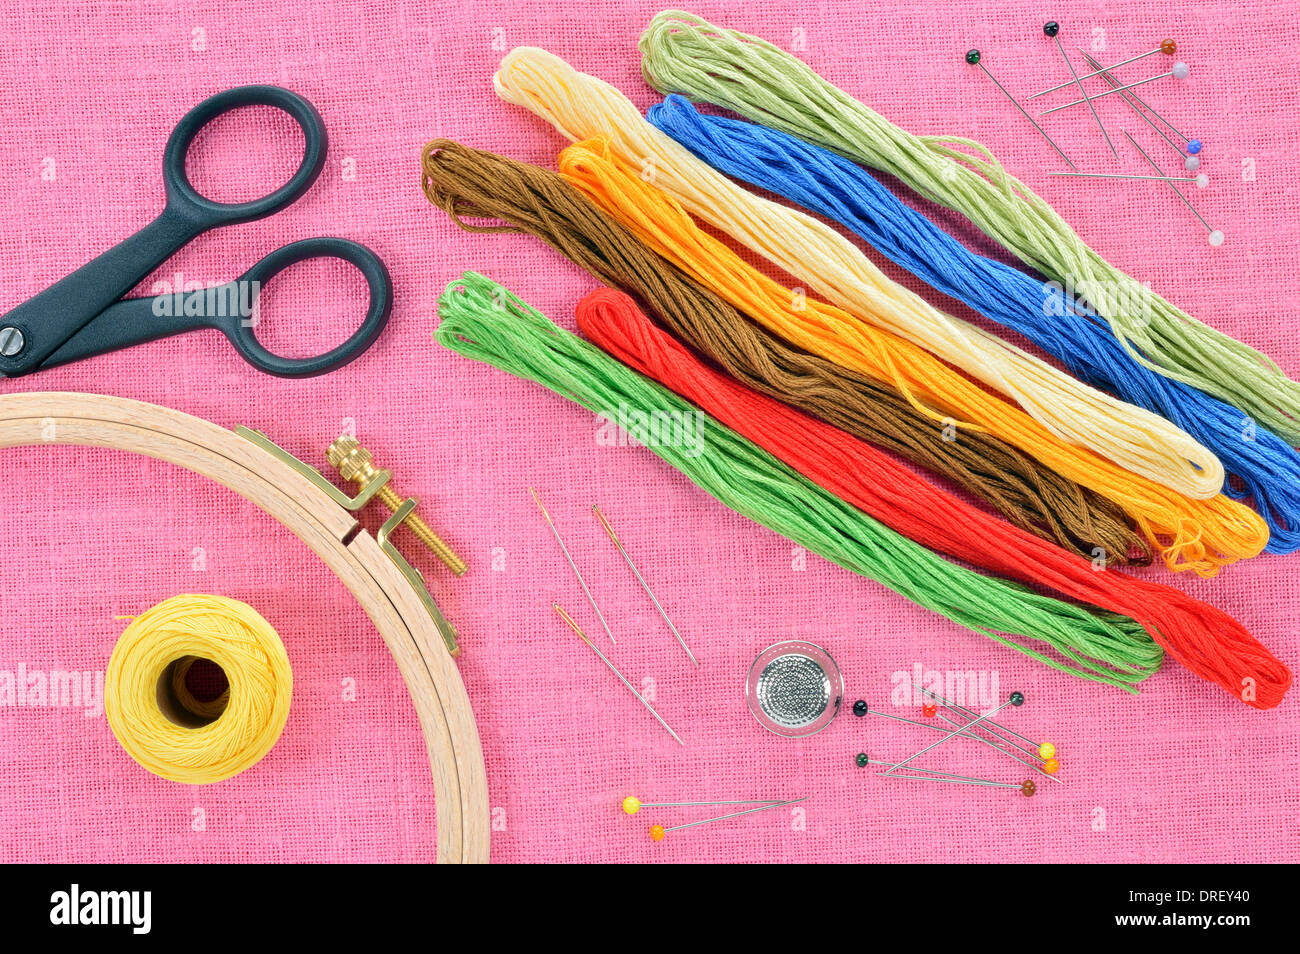 Ricamo e punto croce accessori rosa su tessuto di lino. Cerchio da ricamo, forbici, filo, aghi, ditale. Copia dello spazio. Foto Stock